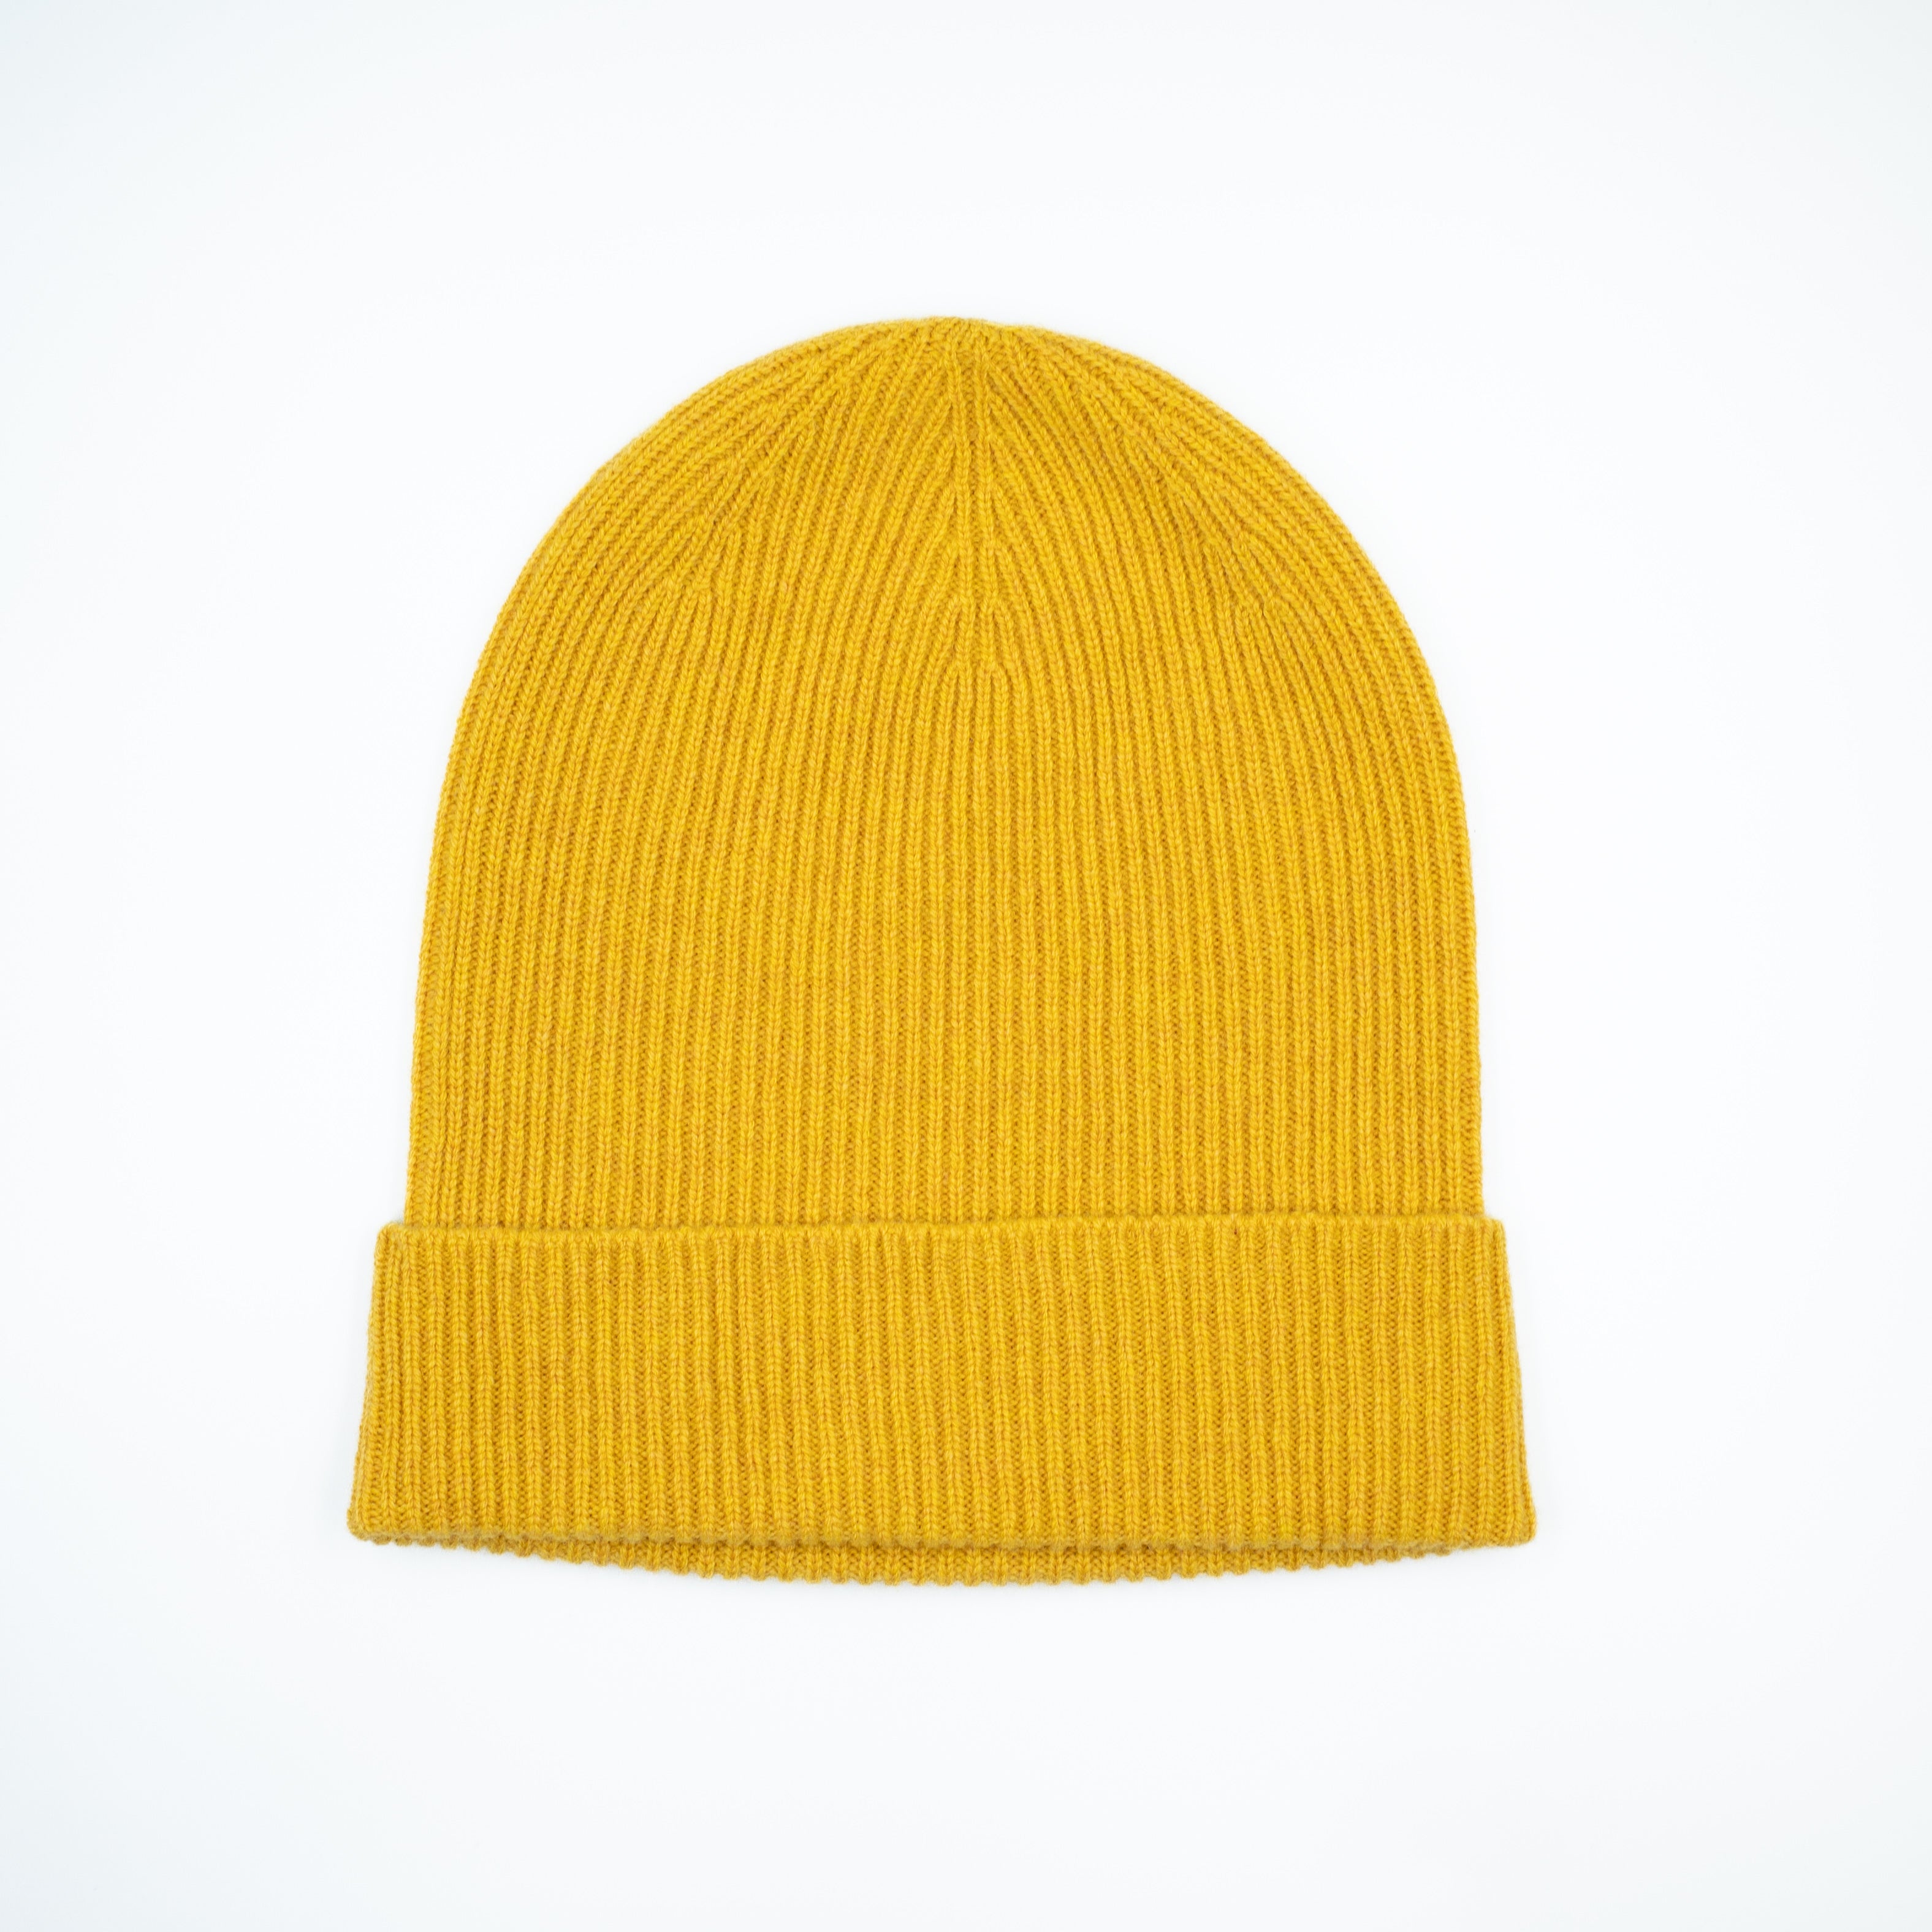 Brand New Scottish Mustard Yellow Beanie Hat Unisex